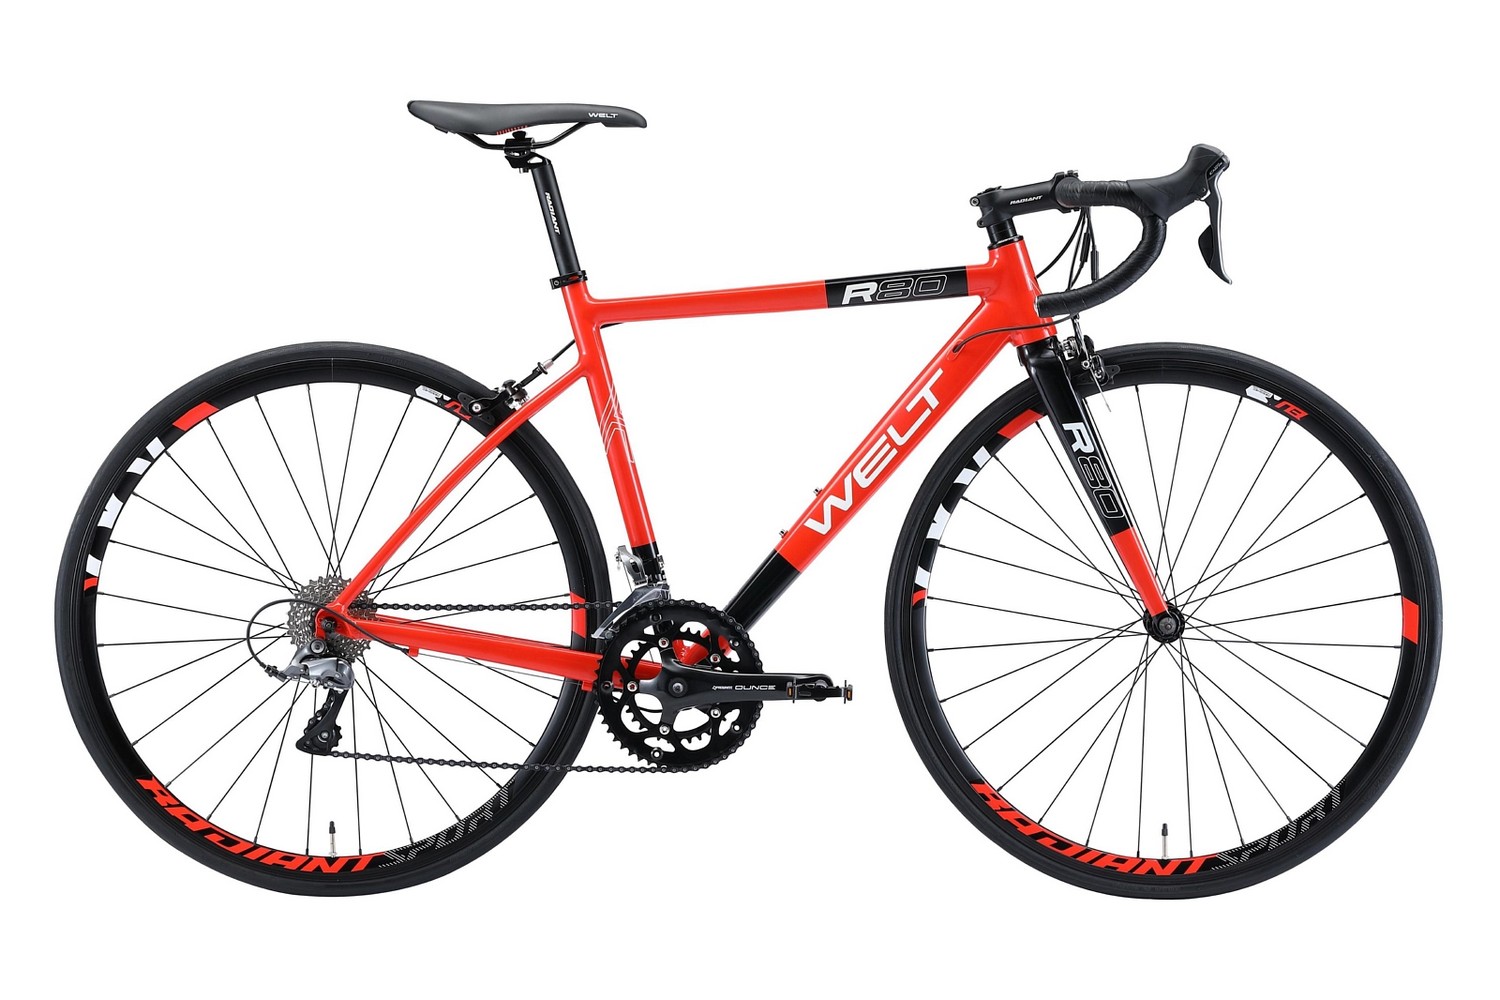 Welt Велосипед Шоссейные R80, год 2021  , ростовка 22.5, цвет Красный, Черный